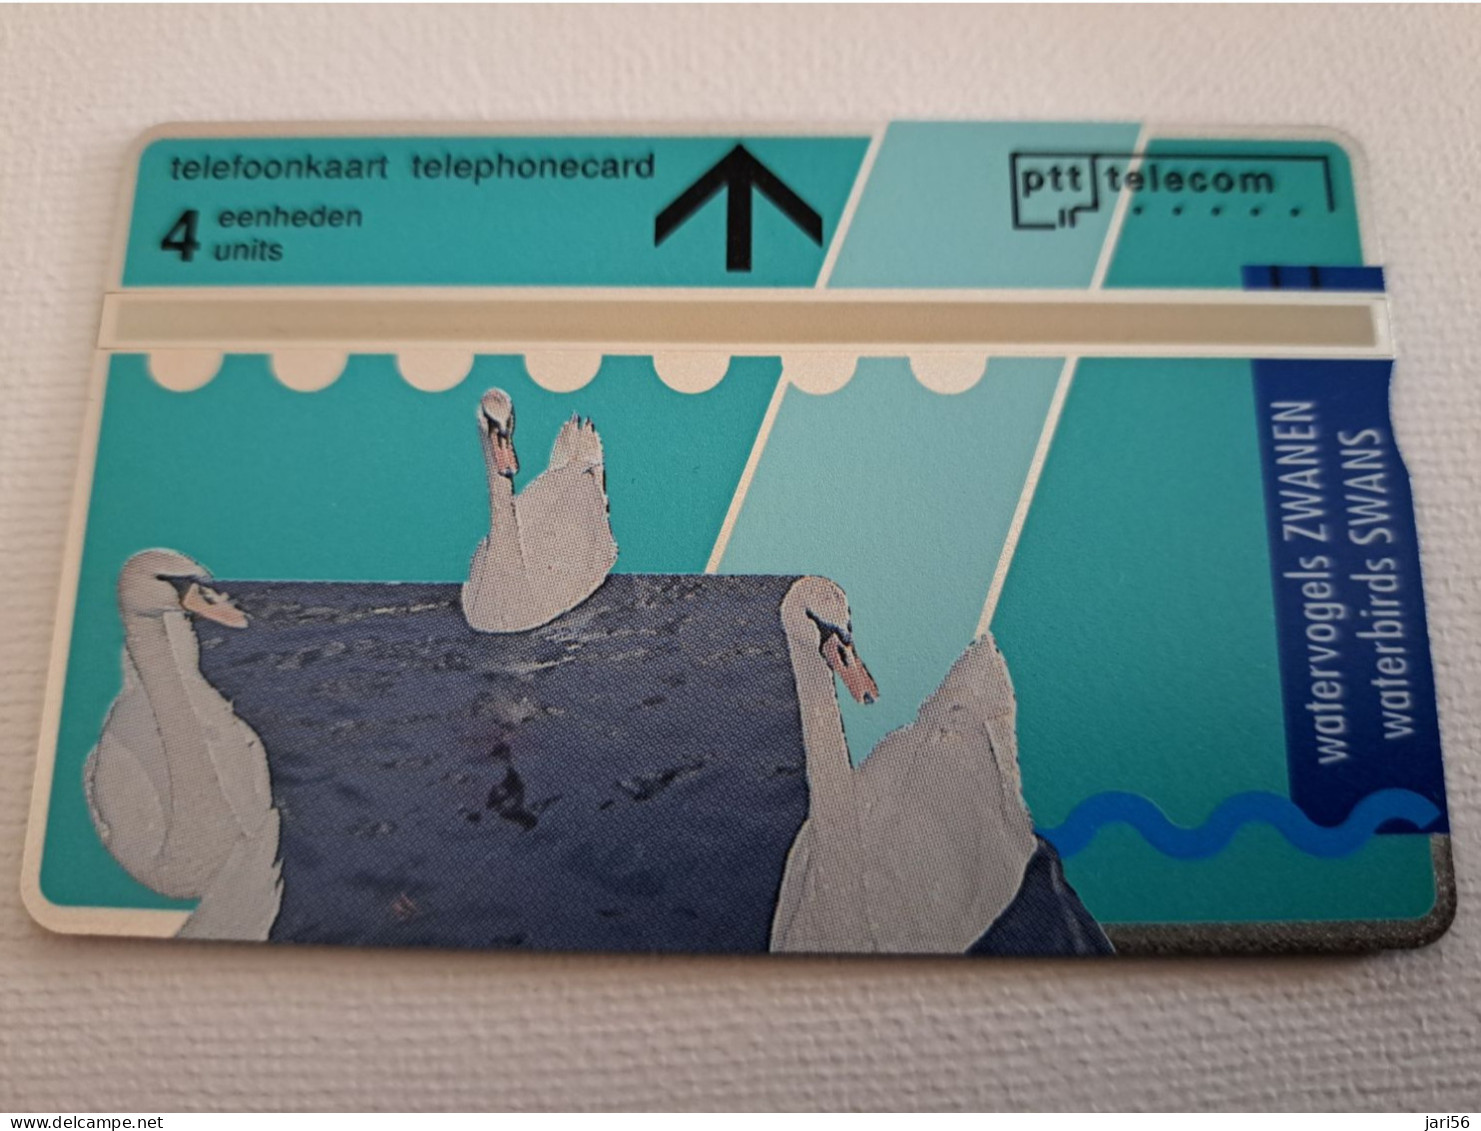 NETHERLANDS  L&G CARDS SERIE SWANS/ BIRDS  3X  R008/01-03 TELE ART    /  MINT   ** 16589** - Publiques